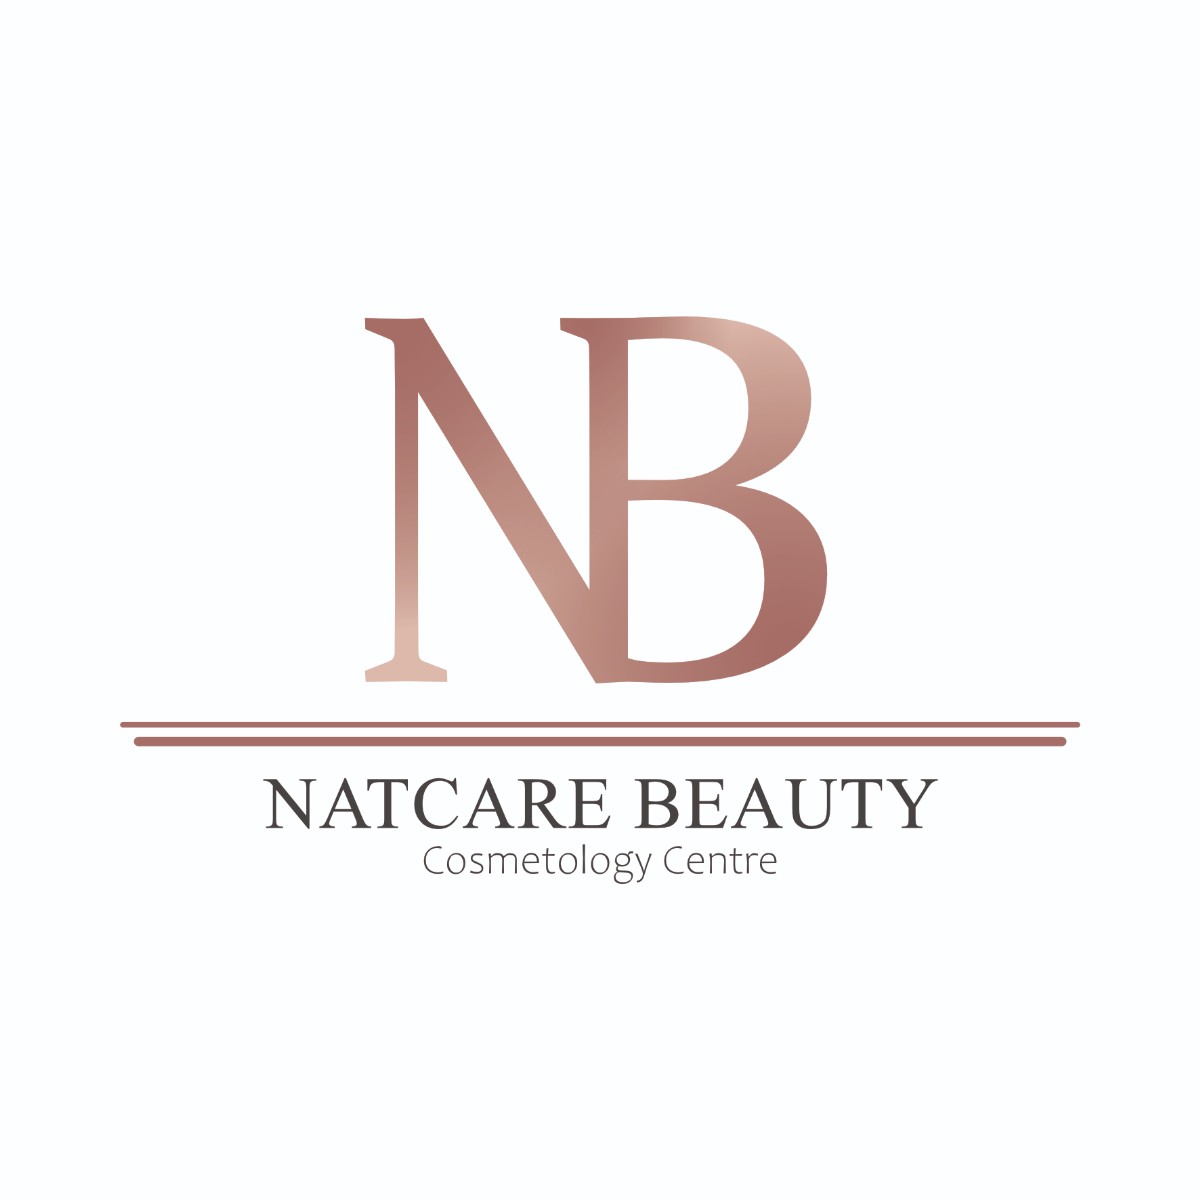 Natcare Beauty Cosmetology Centre logo